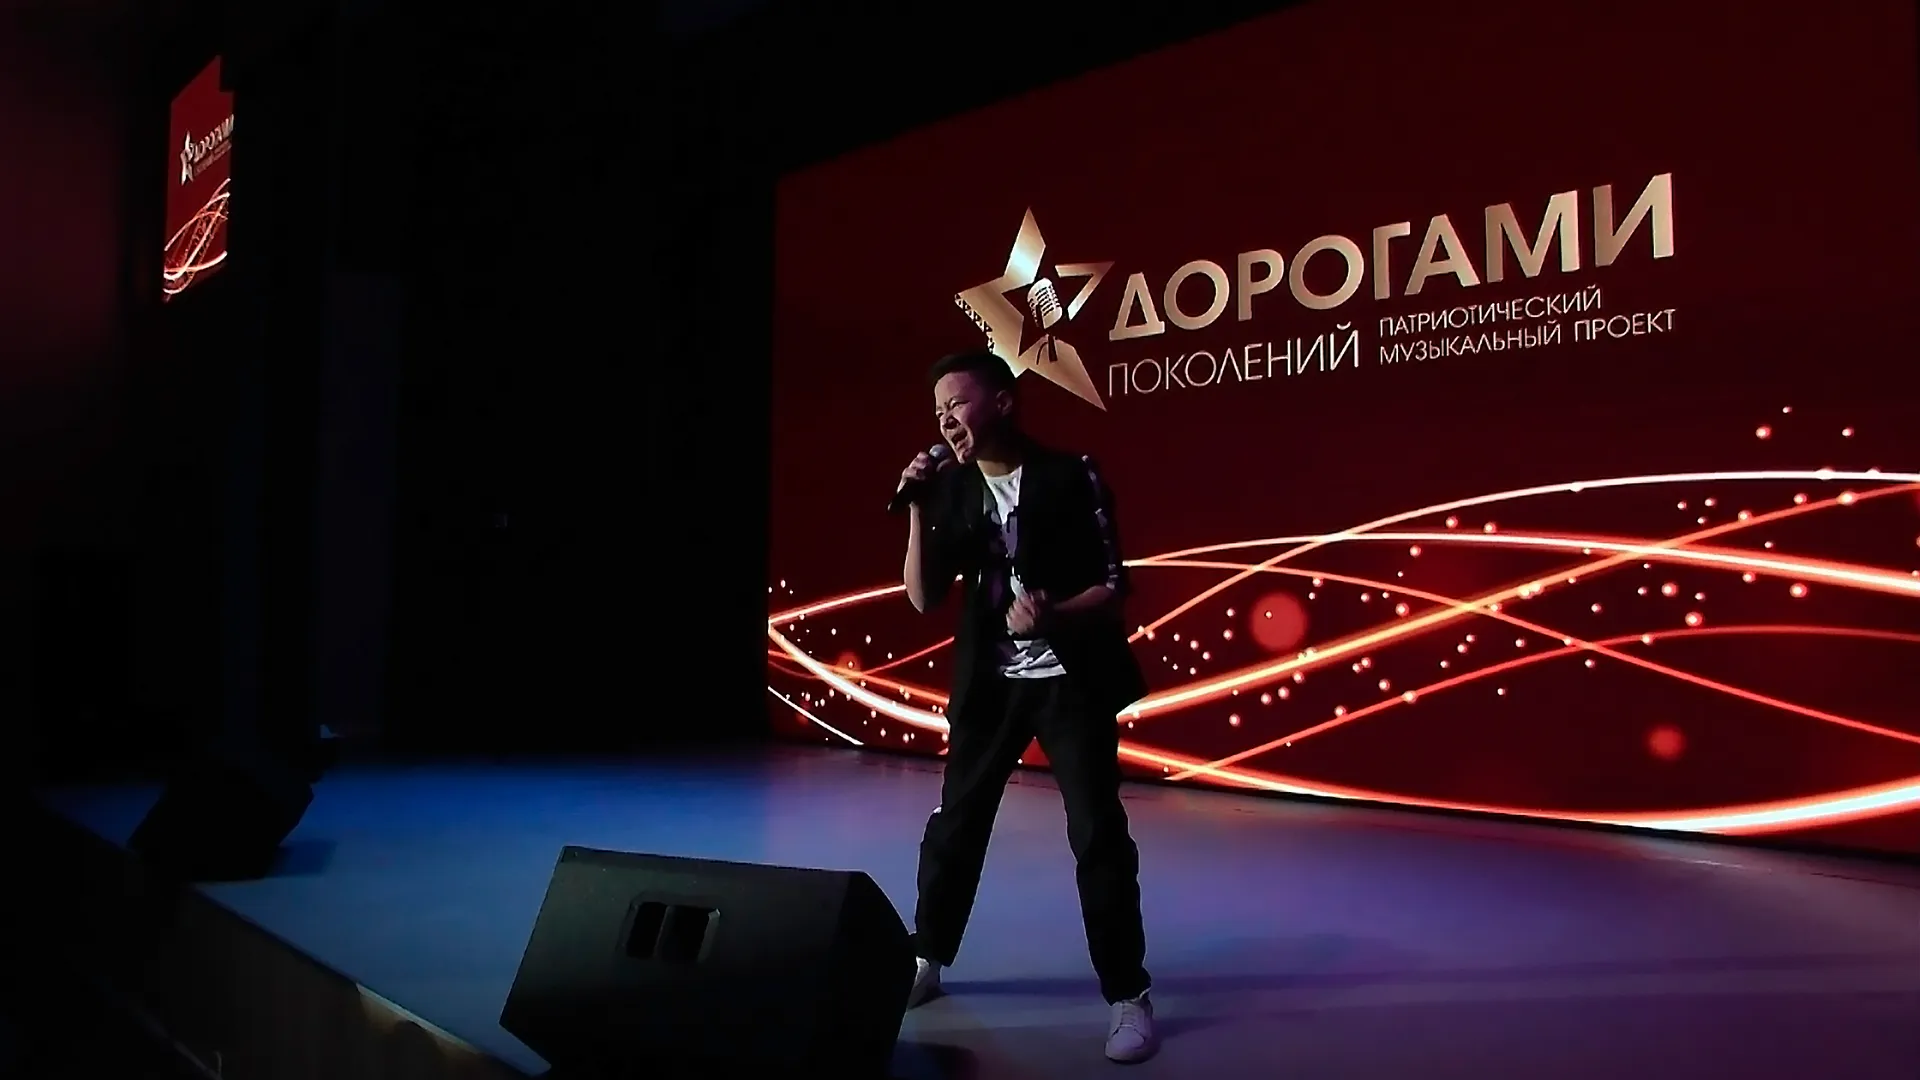 Фото: скрин из видео АНО "Ямал-Медиа"